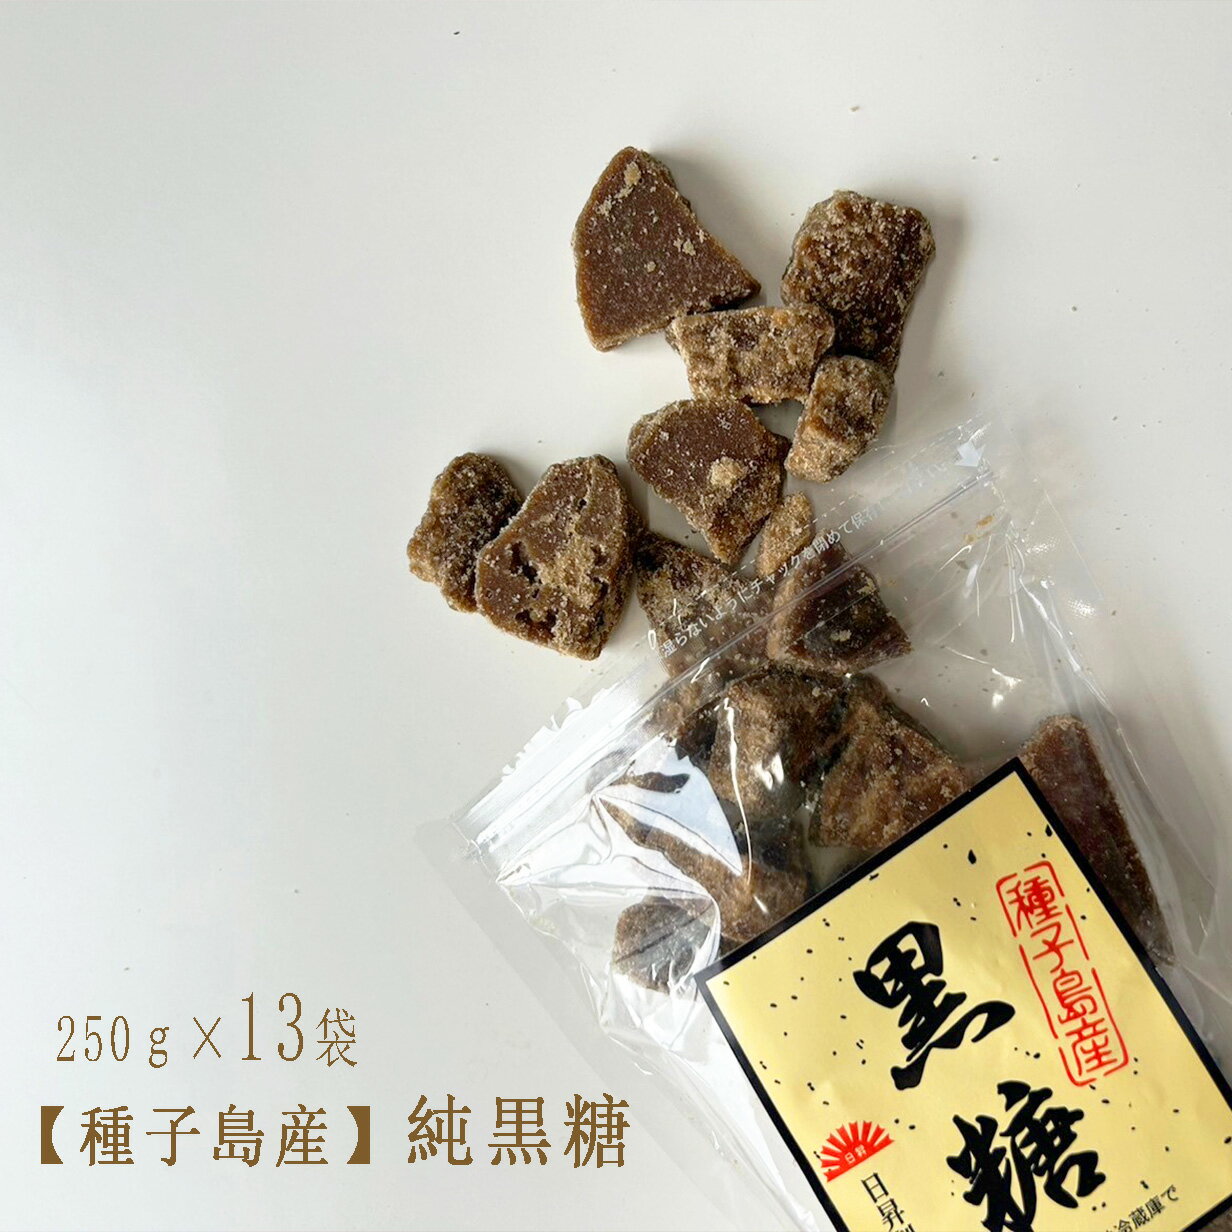 上地屋 大豆黒糖菓子 60g×6袋 沖縄 人気 定番 土産 お菓子 黒砂糖 ミネラル カリウム